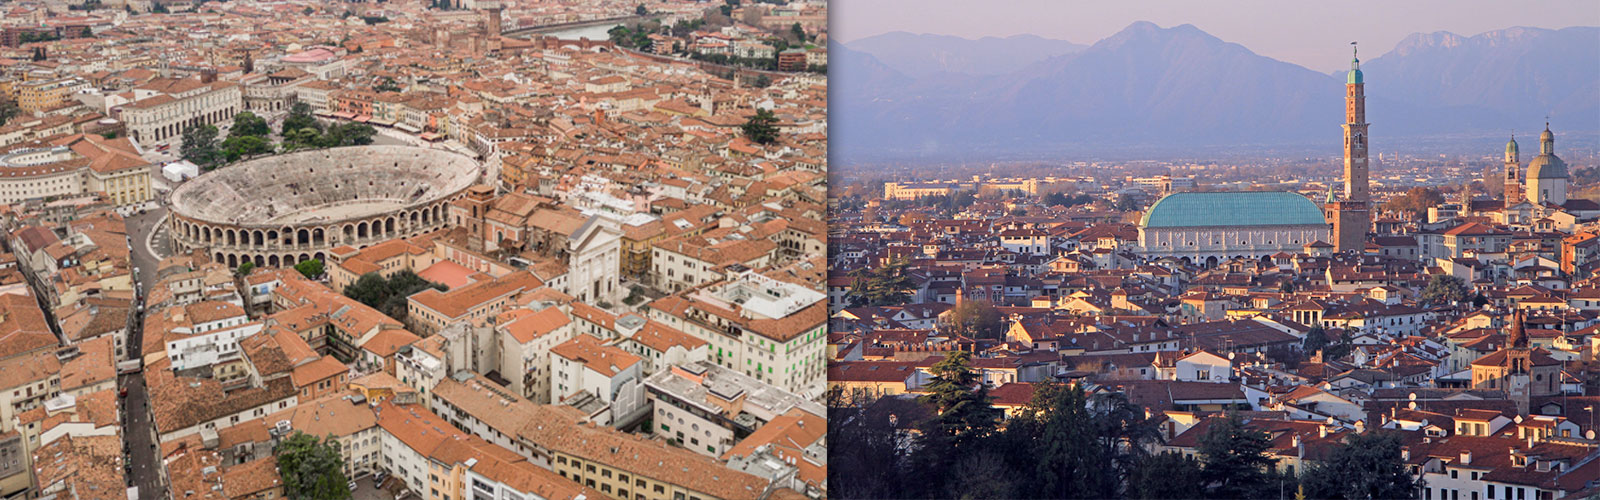 L’amministrazione di sostegno: Verona e Vicenza a confronto